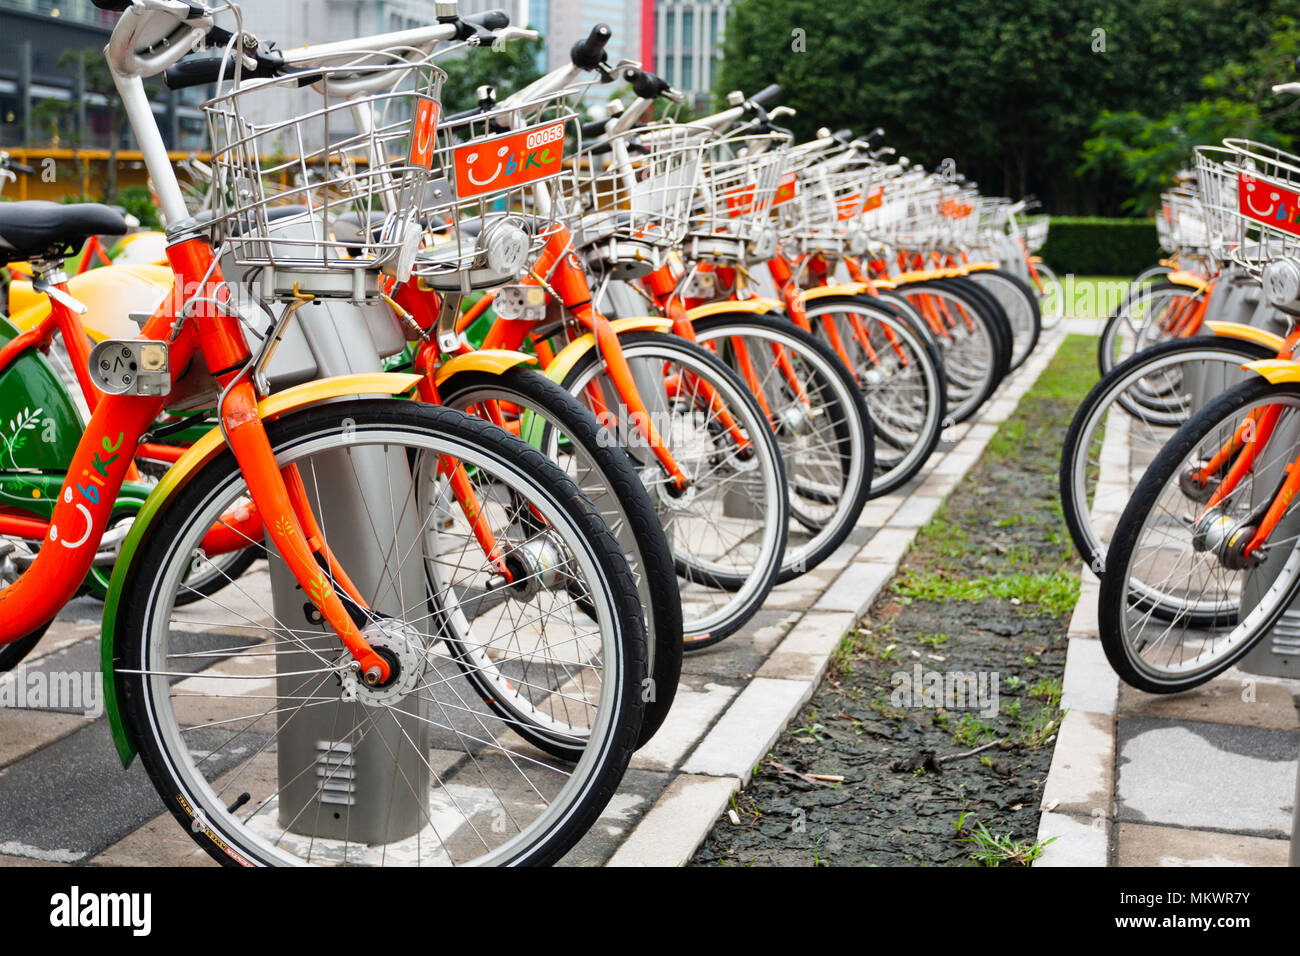 Public bicycles parking at YouBike (U Bike) Bike Sharing Station, Zhongxin Plaza, Xinyi District, Taipei City, Taiwan Stock Photo